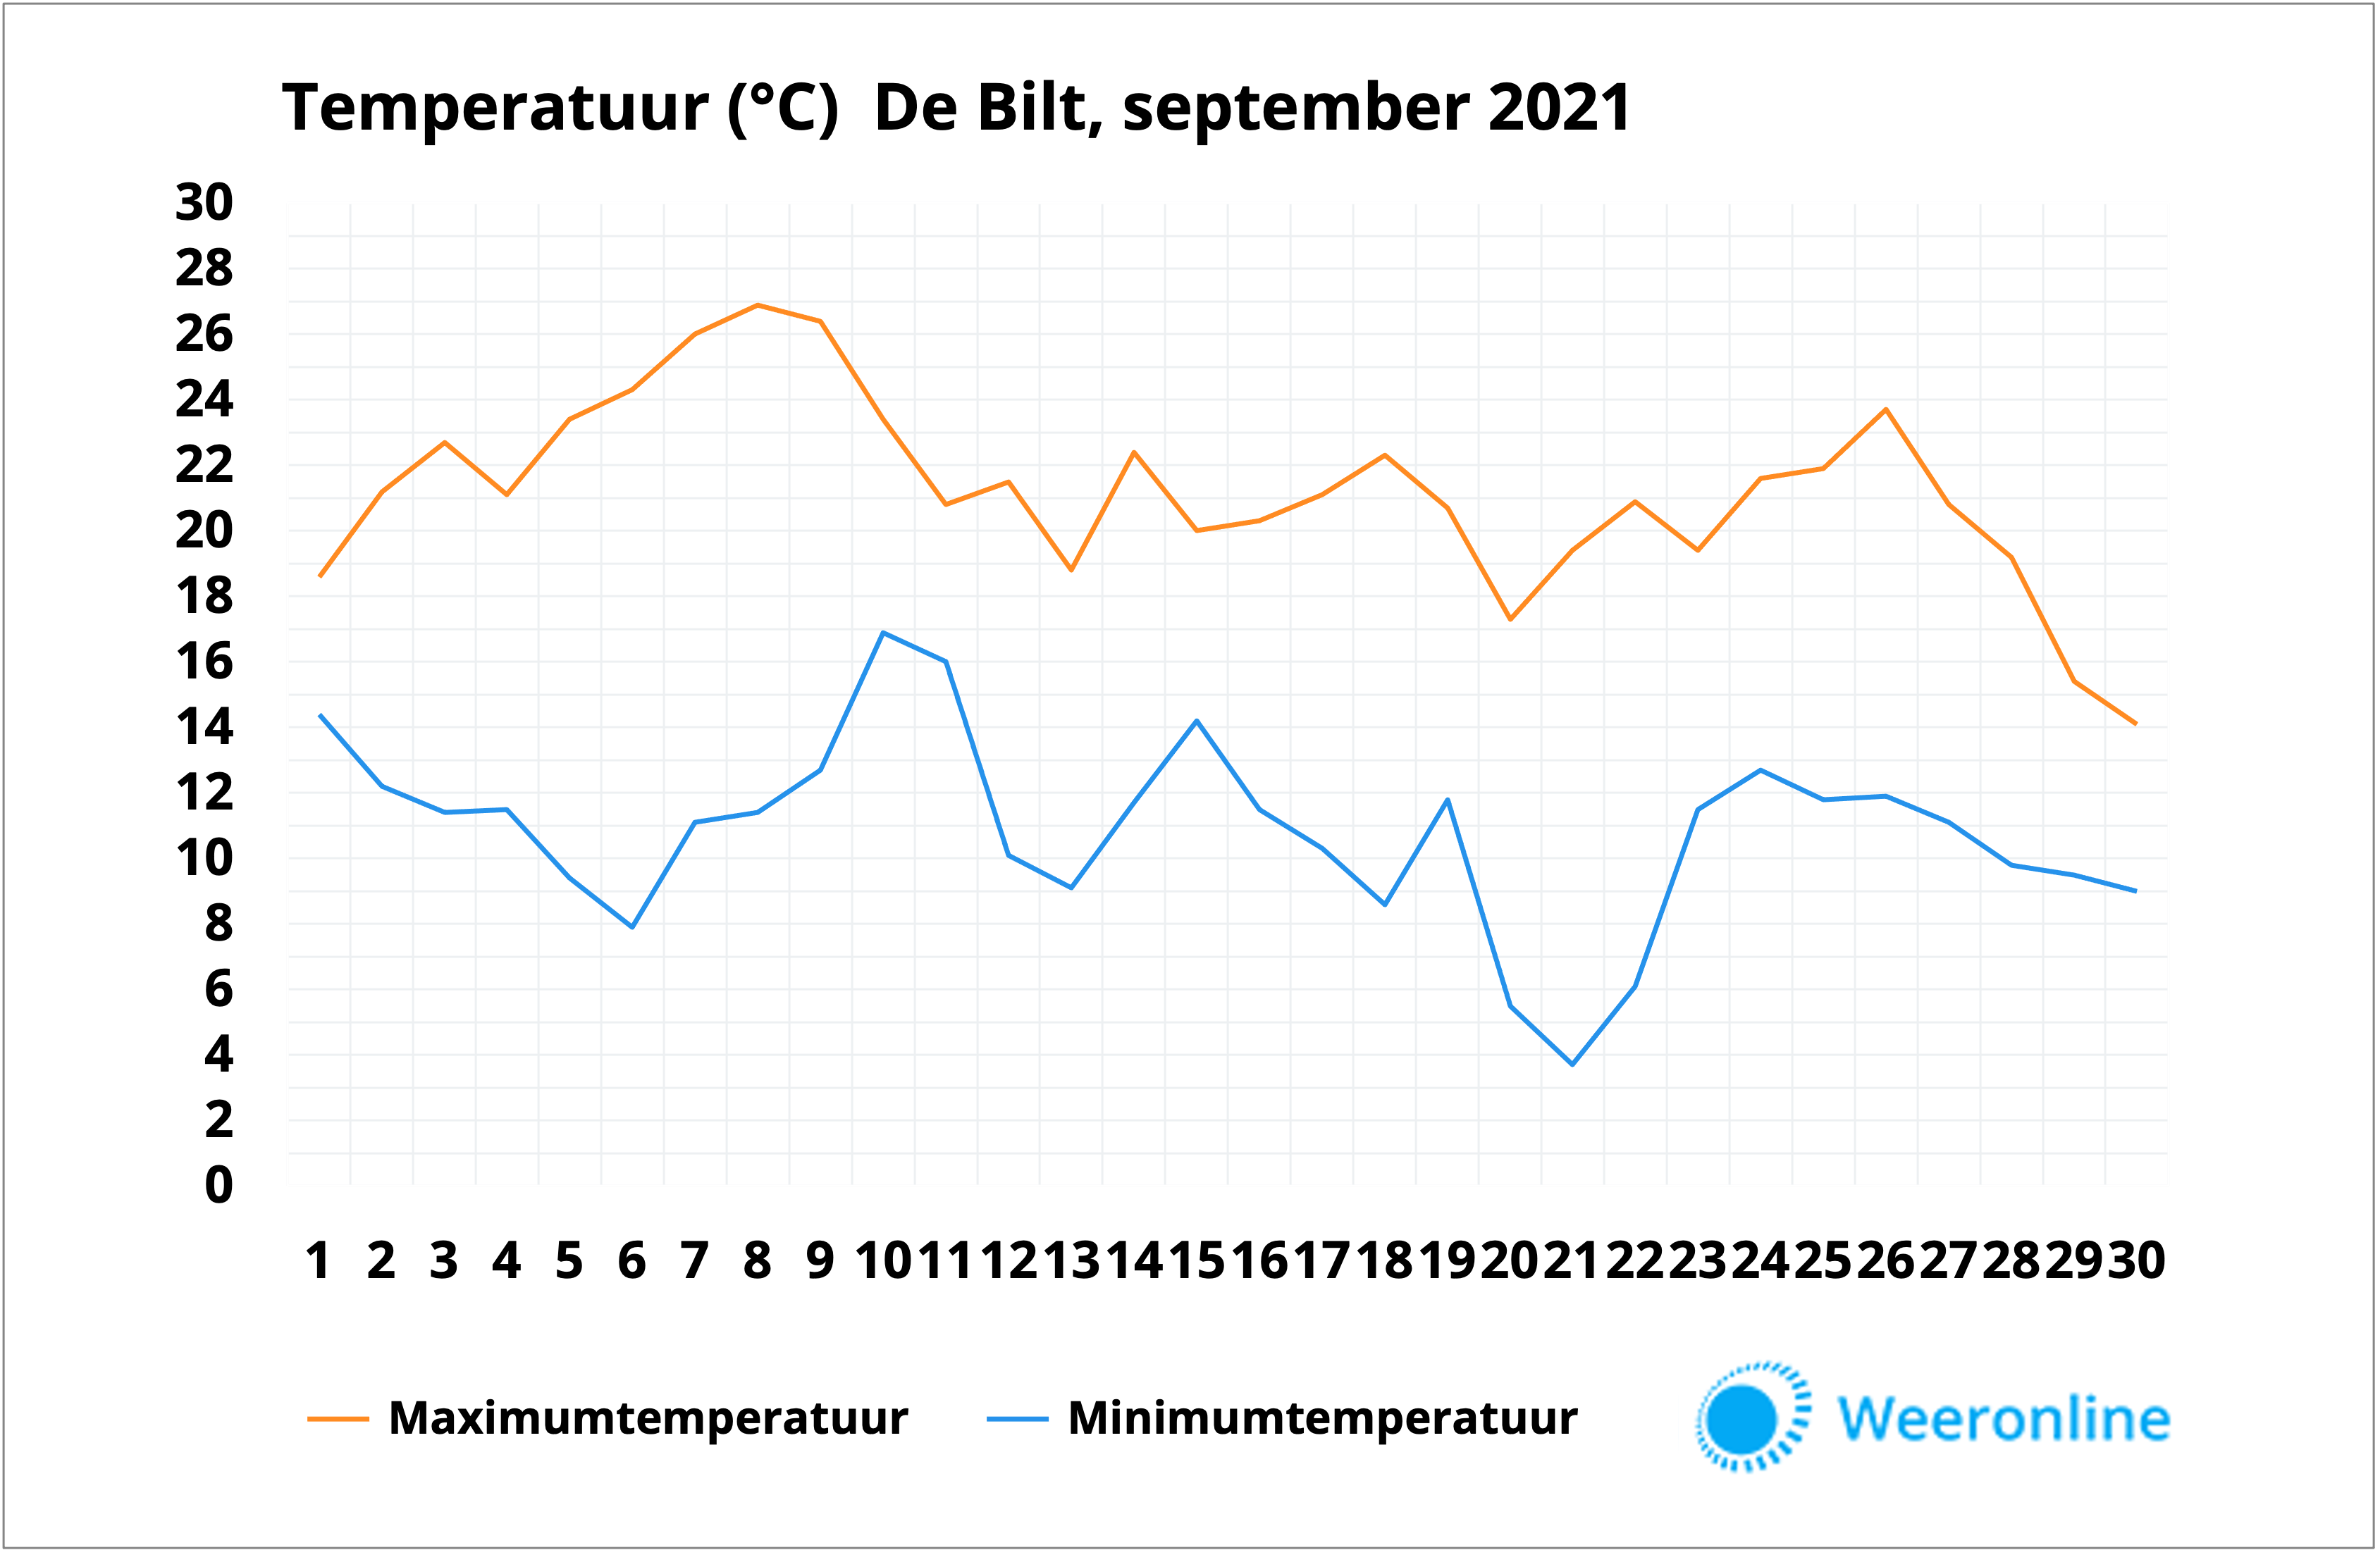 Temperatuur De Bilt september 2021 definitief